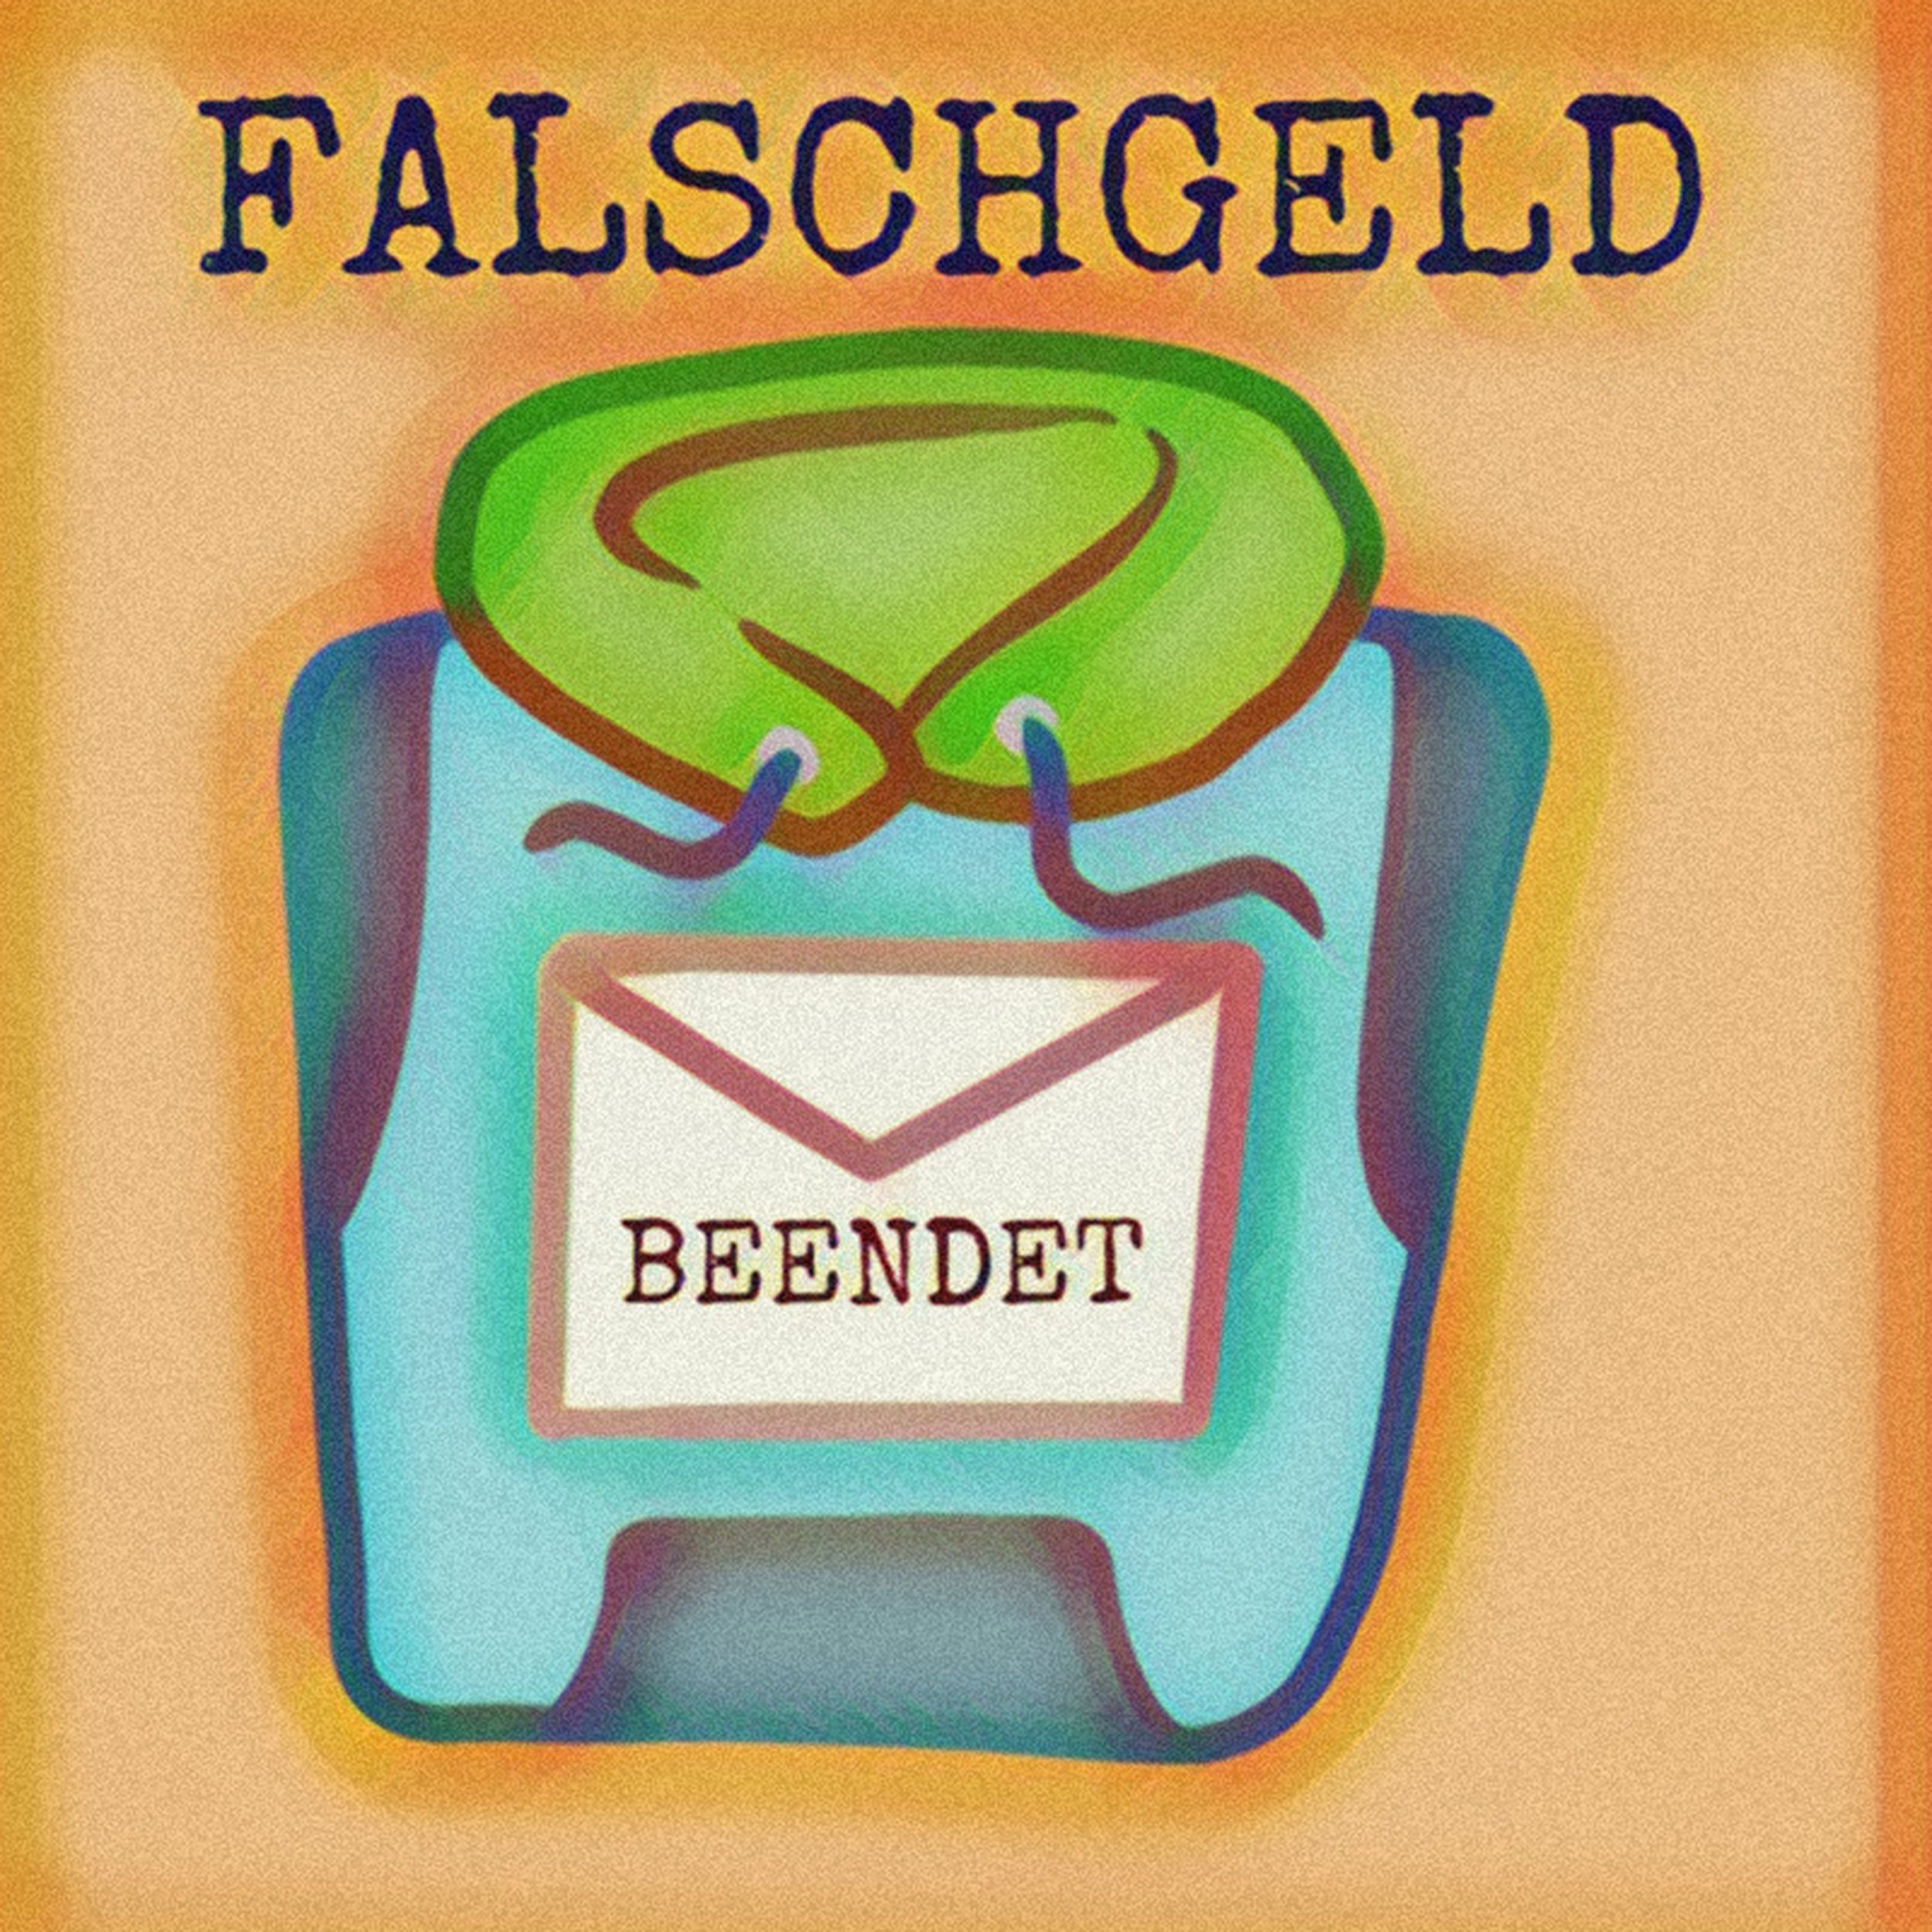 2024 - FALSCHGELD - Beendet (single)